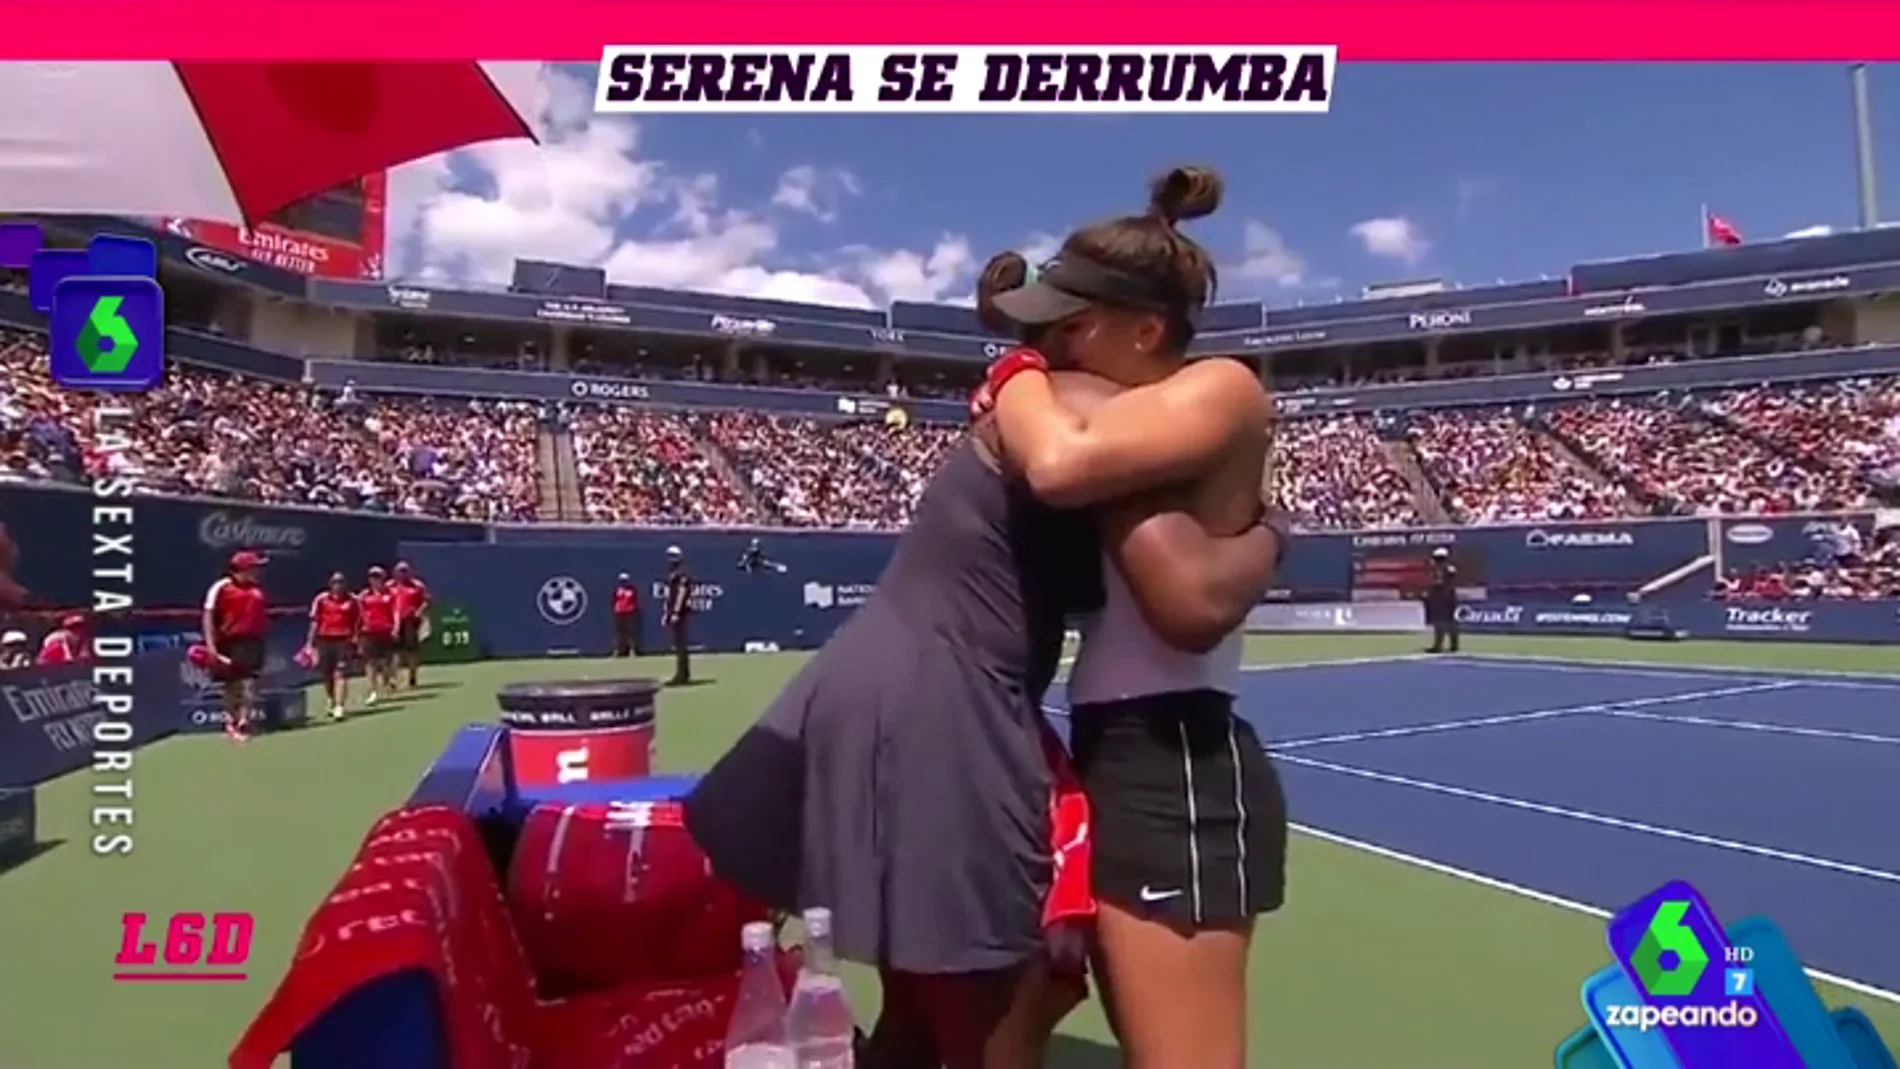 El momento más emotivo del tenis (con abrazo incluido) protagonizado por Serena Williams y Bianca Andreescu 